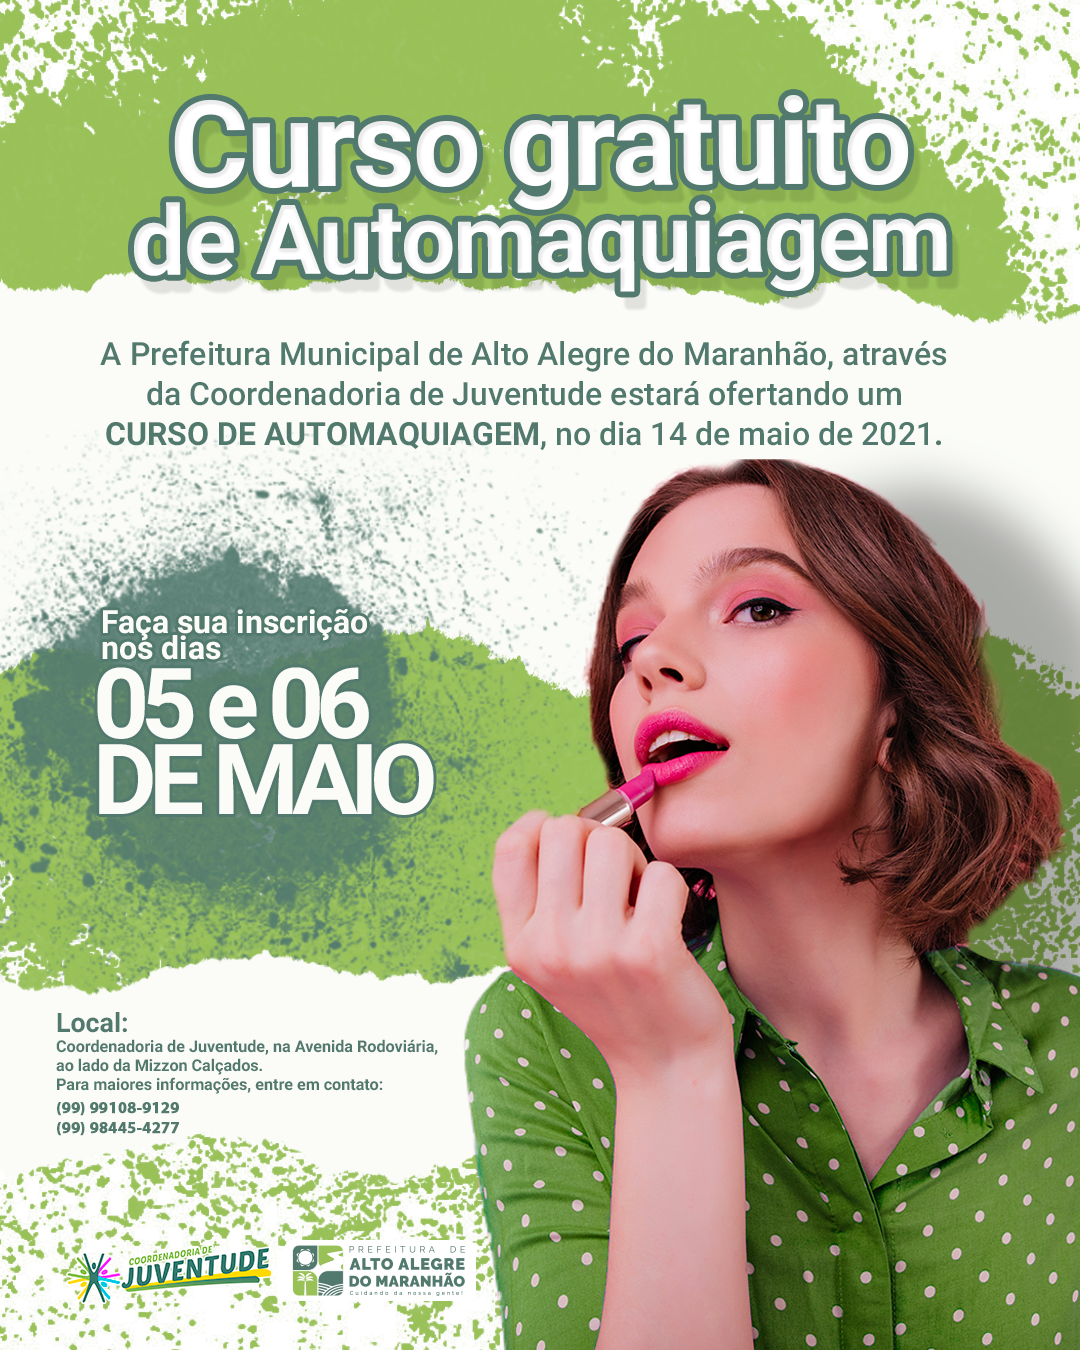 A Prefeitura Municipal de Alto Alegre do Maranhão, através da Coordenadoria de Juventude estará ofertando um CURSO DE AUTOMAQUIAGEM